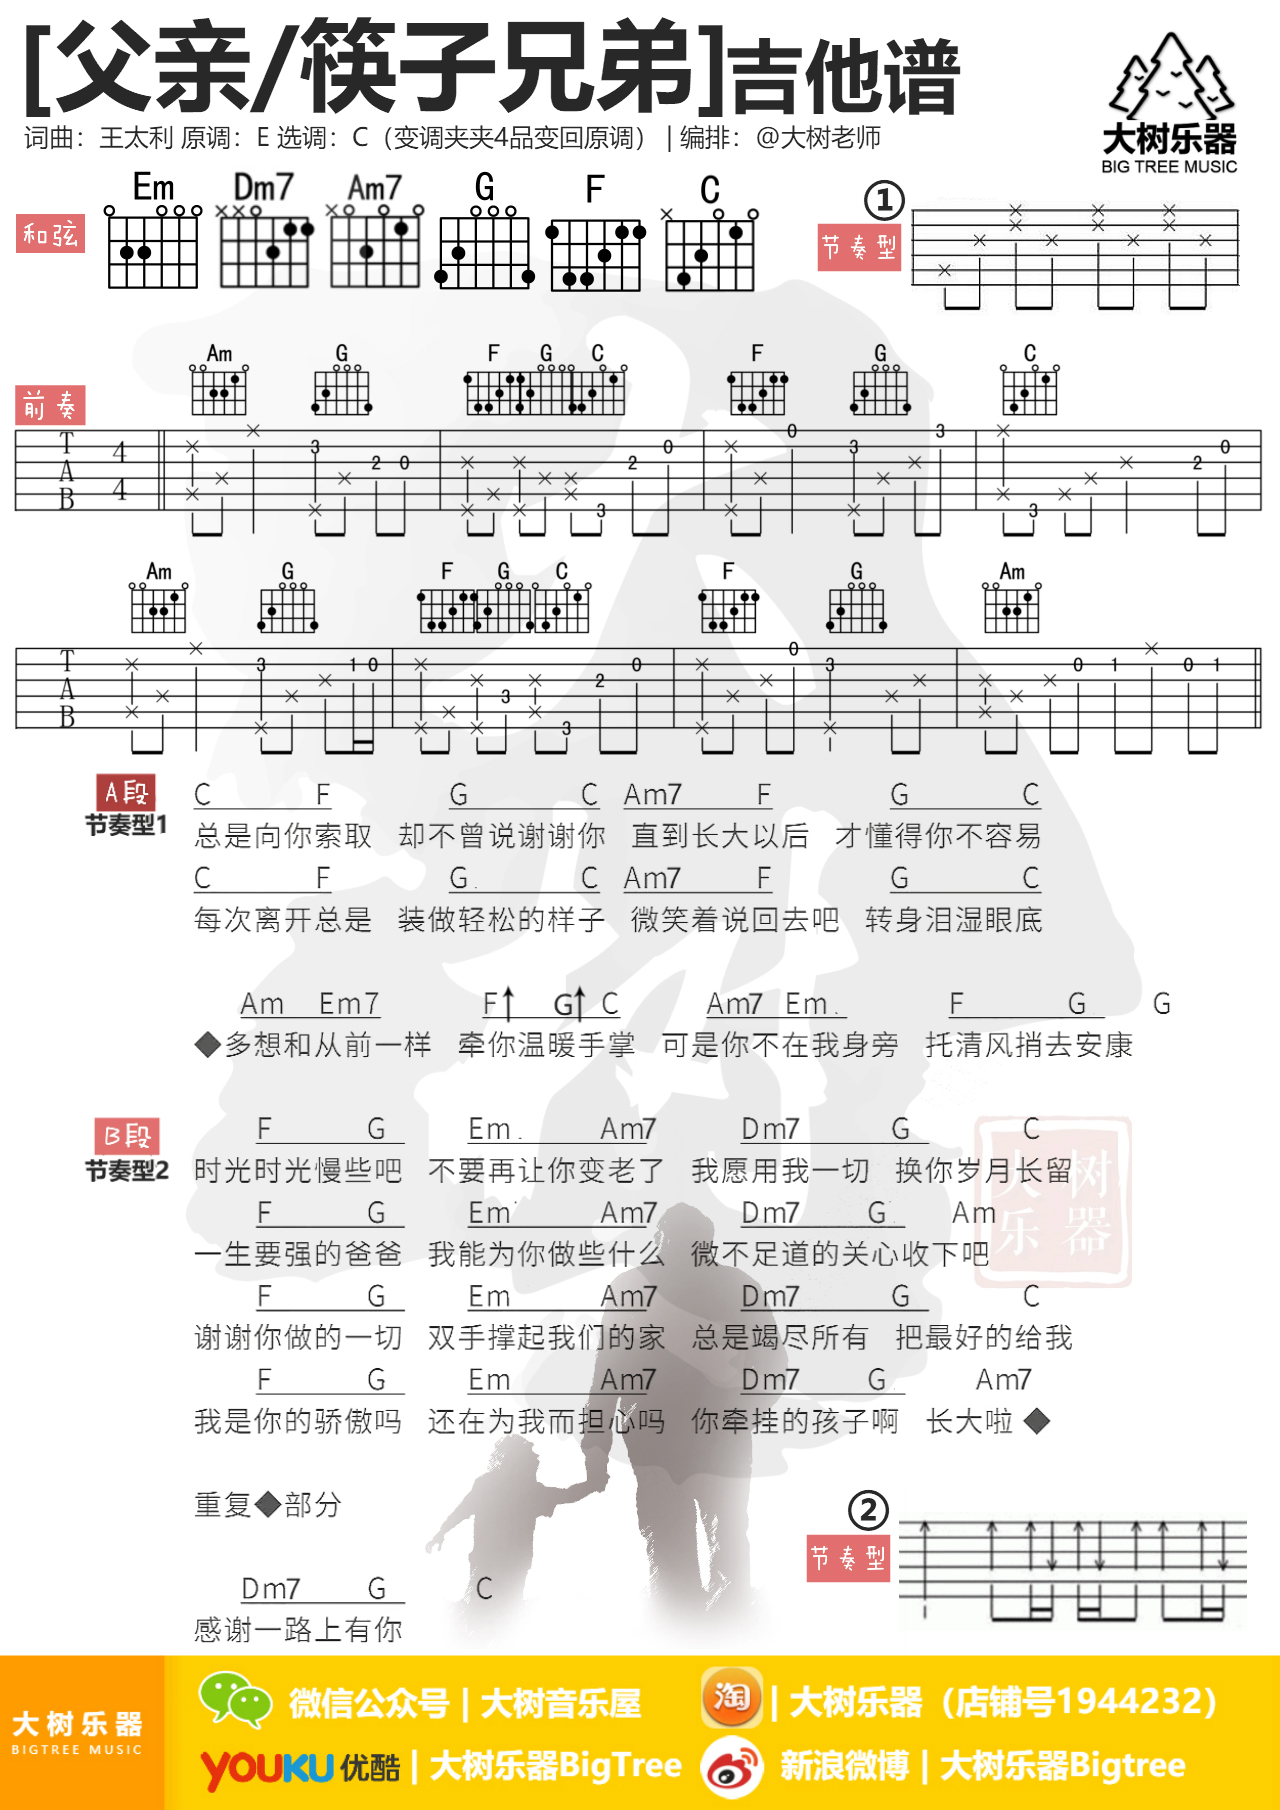 父亲吉他谱(图片谱,弹唱,伴奏,大树乐器)_筷子兄弟(肖央;王太利)_模板_meitu_3_meitu_4.jpg